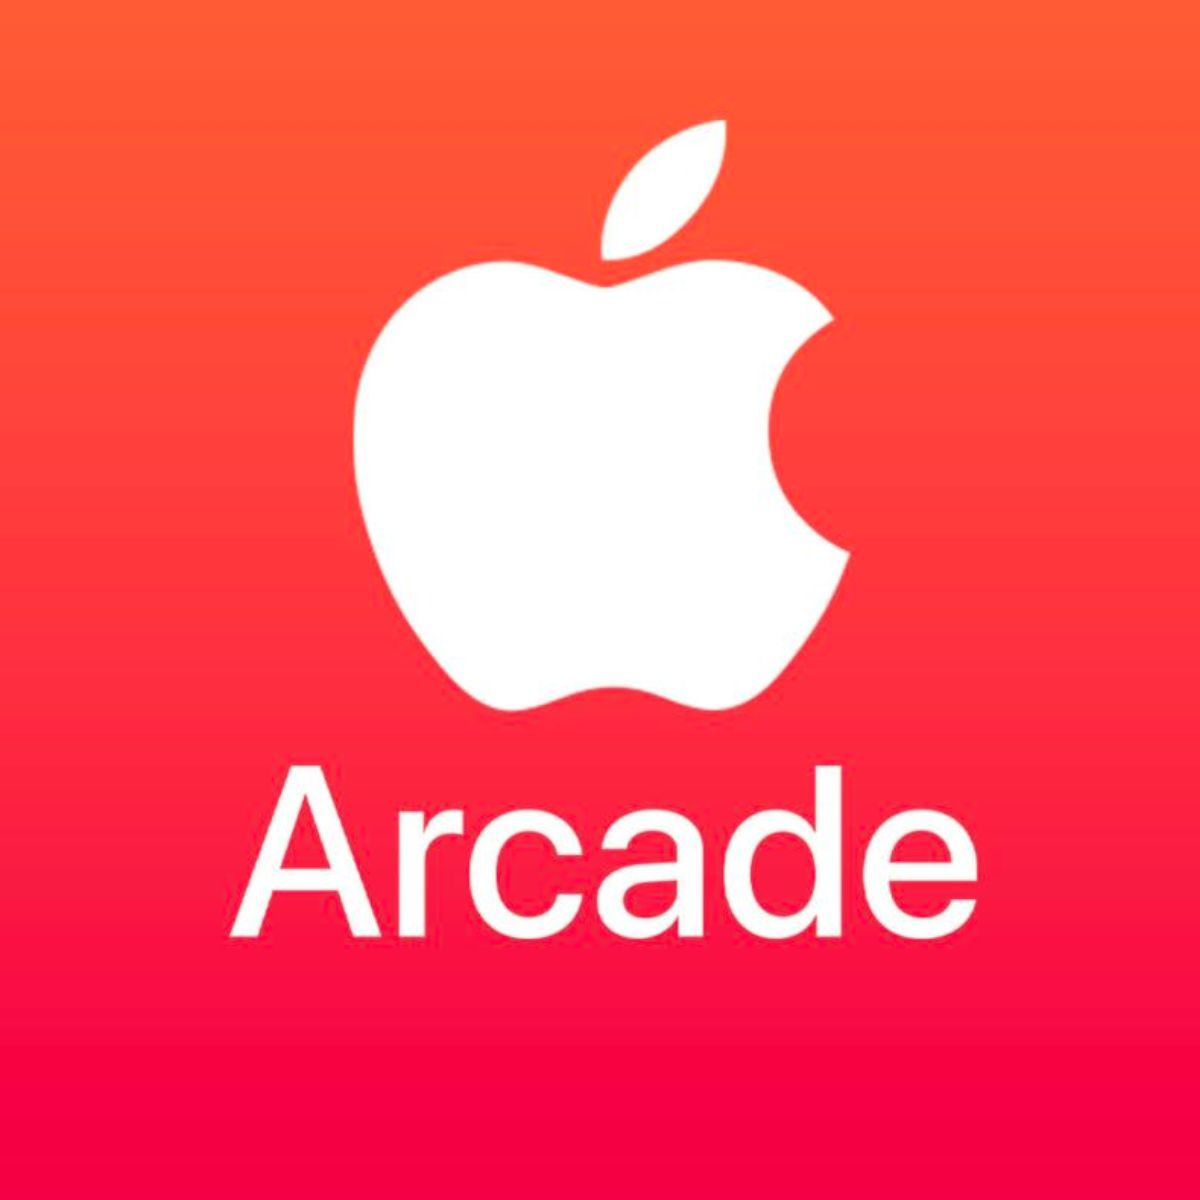 Подписка apple arcade в россии